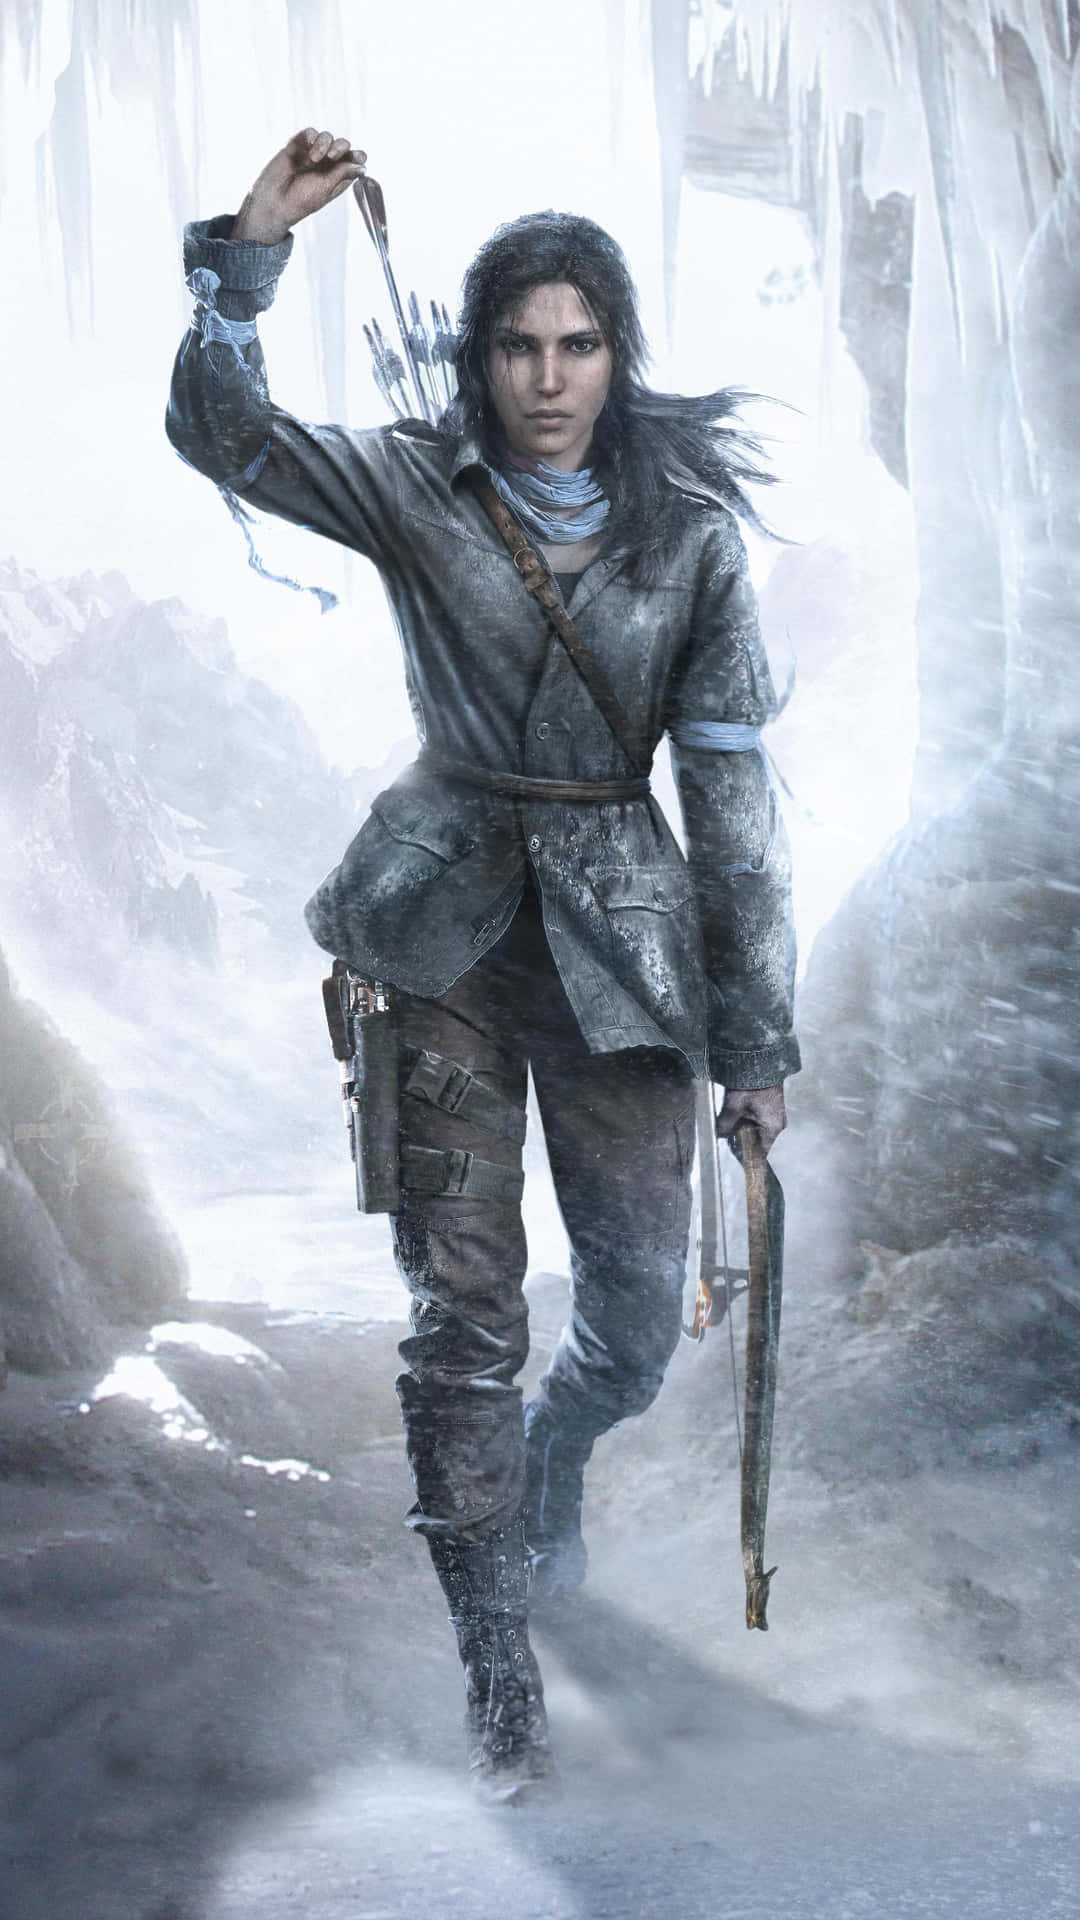 Fondode Pantalla De Android De Rise Of The Tomb Raider En La Nieve.